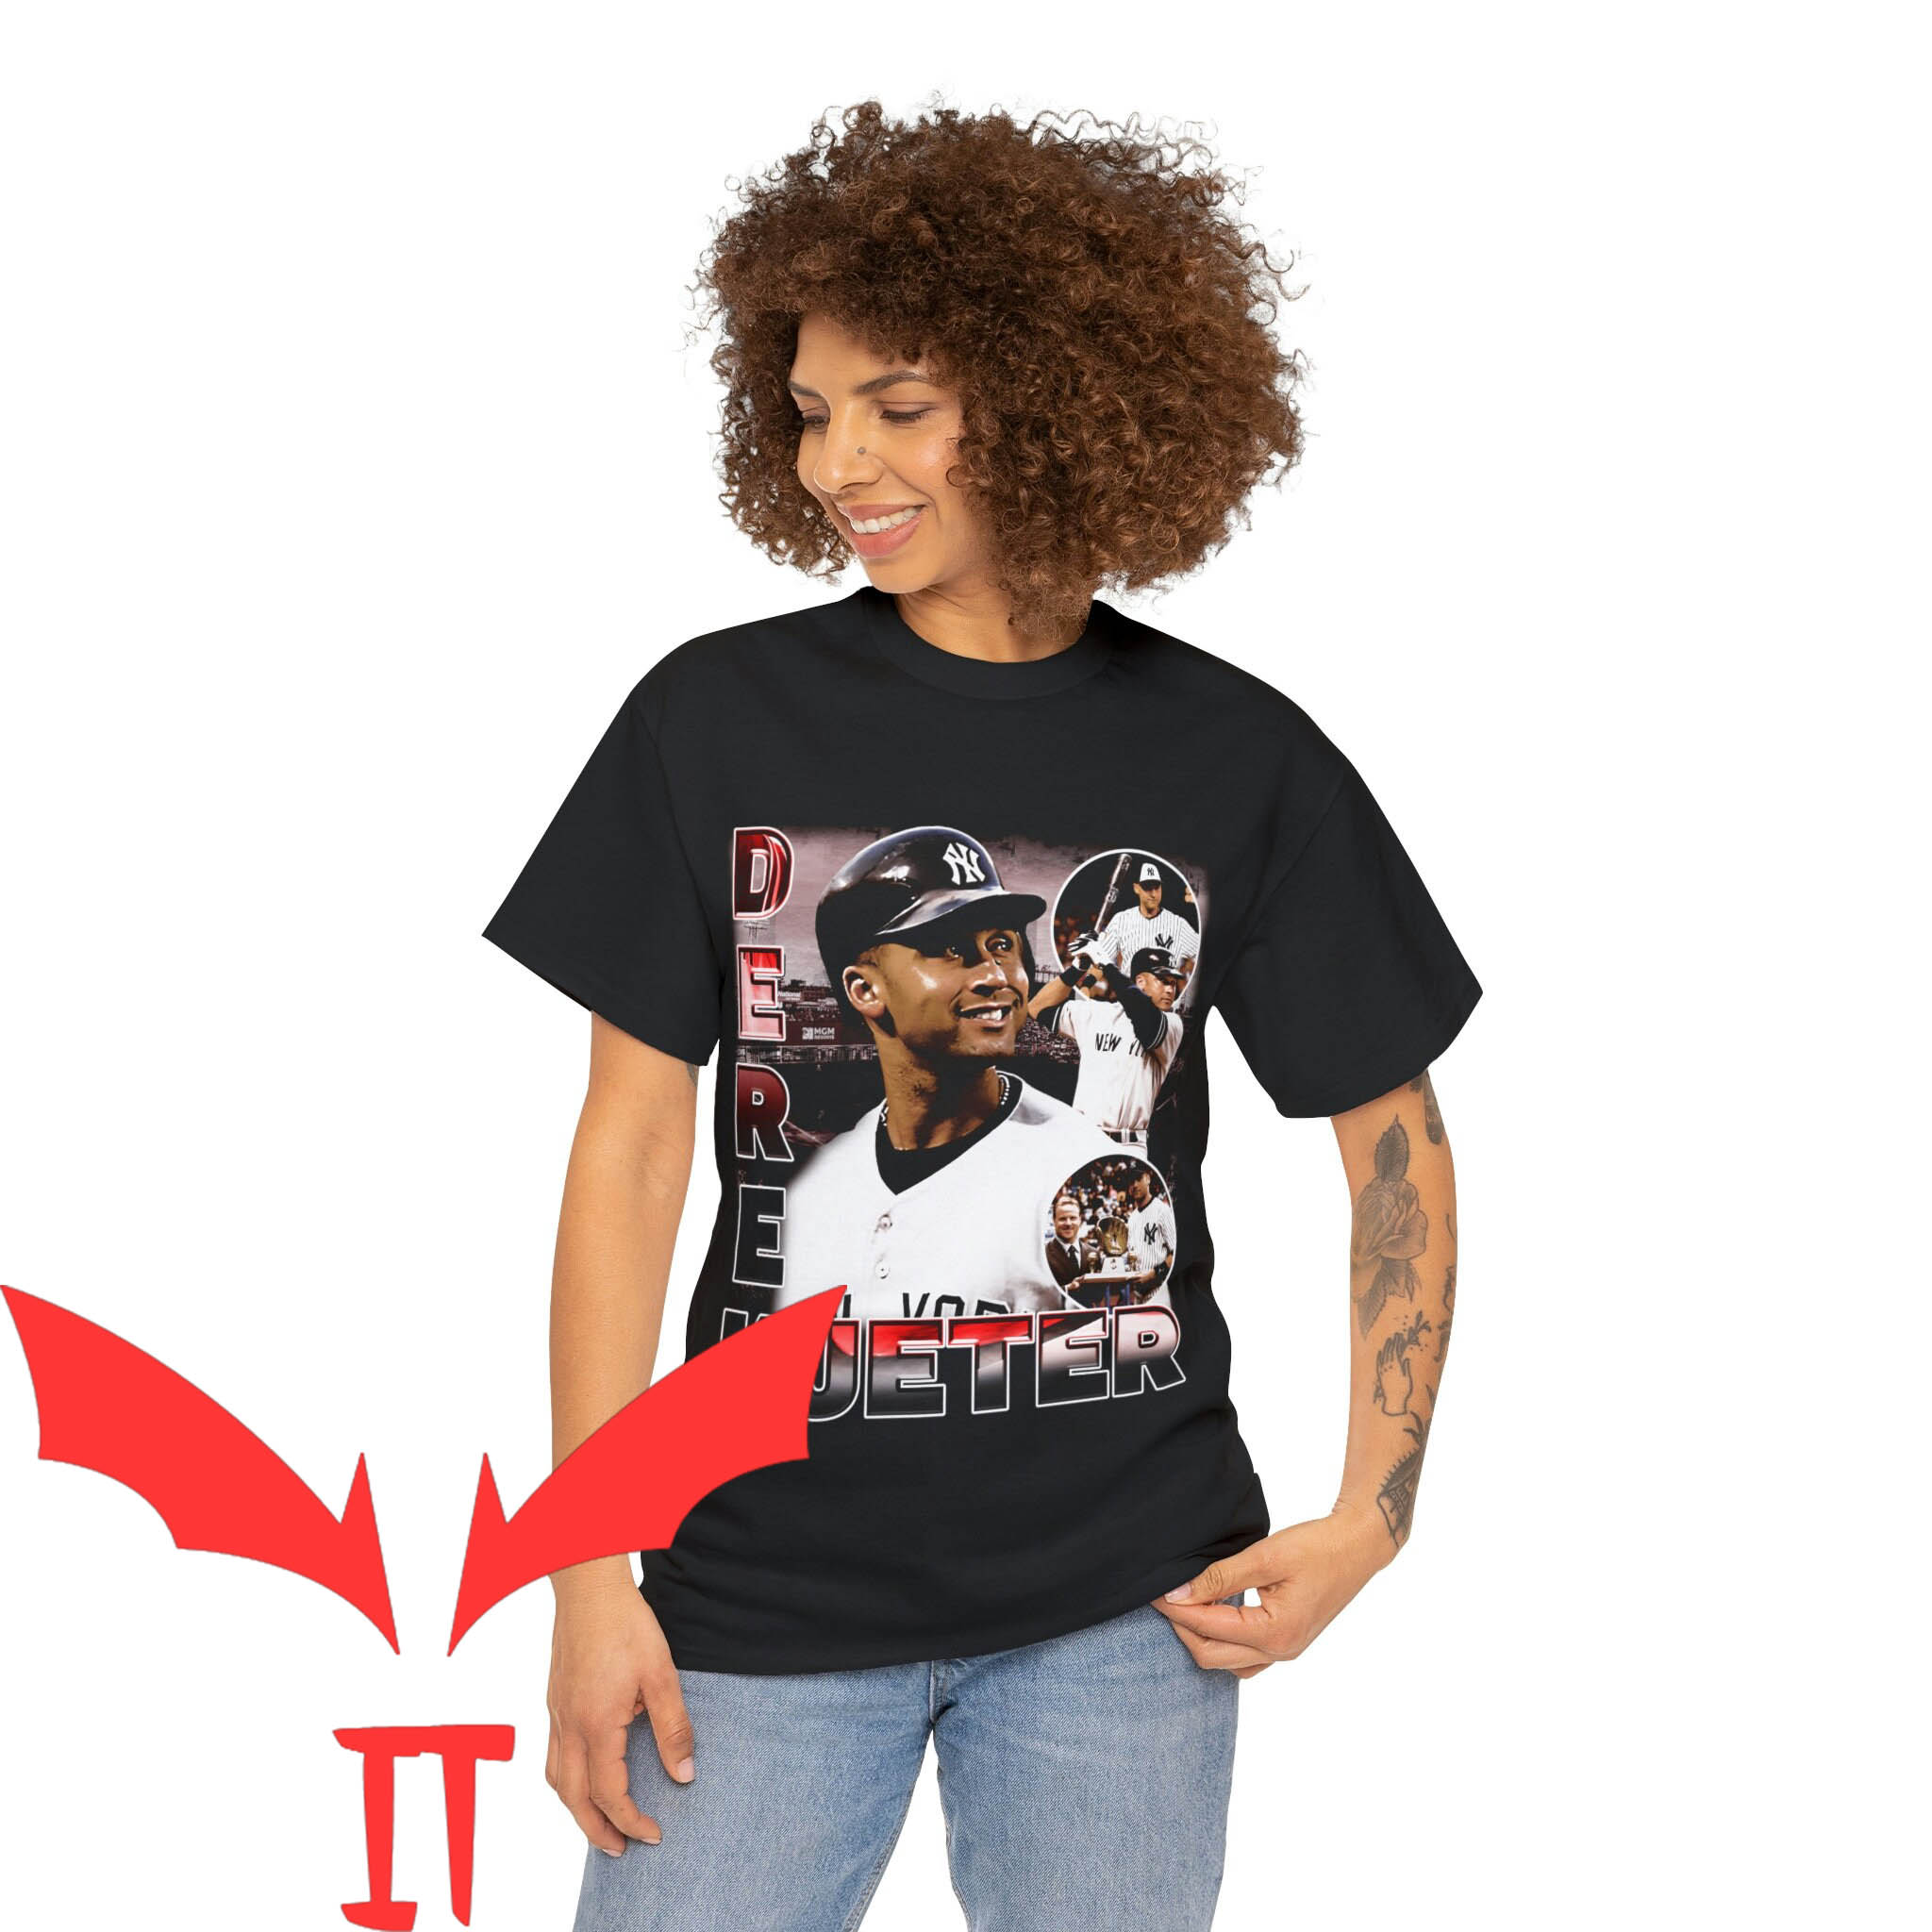 Derek Jeter T-Shirt Vintage 90s Baseball World Series